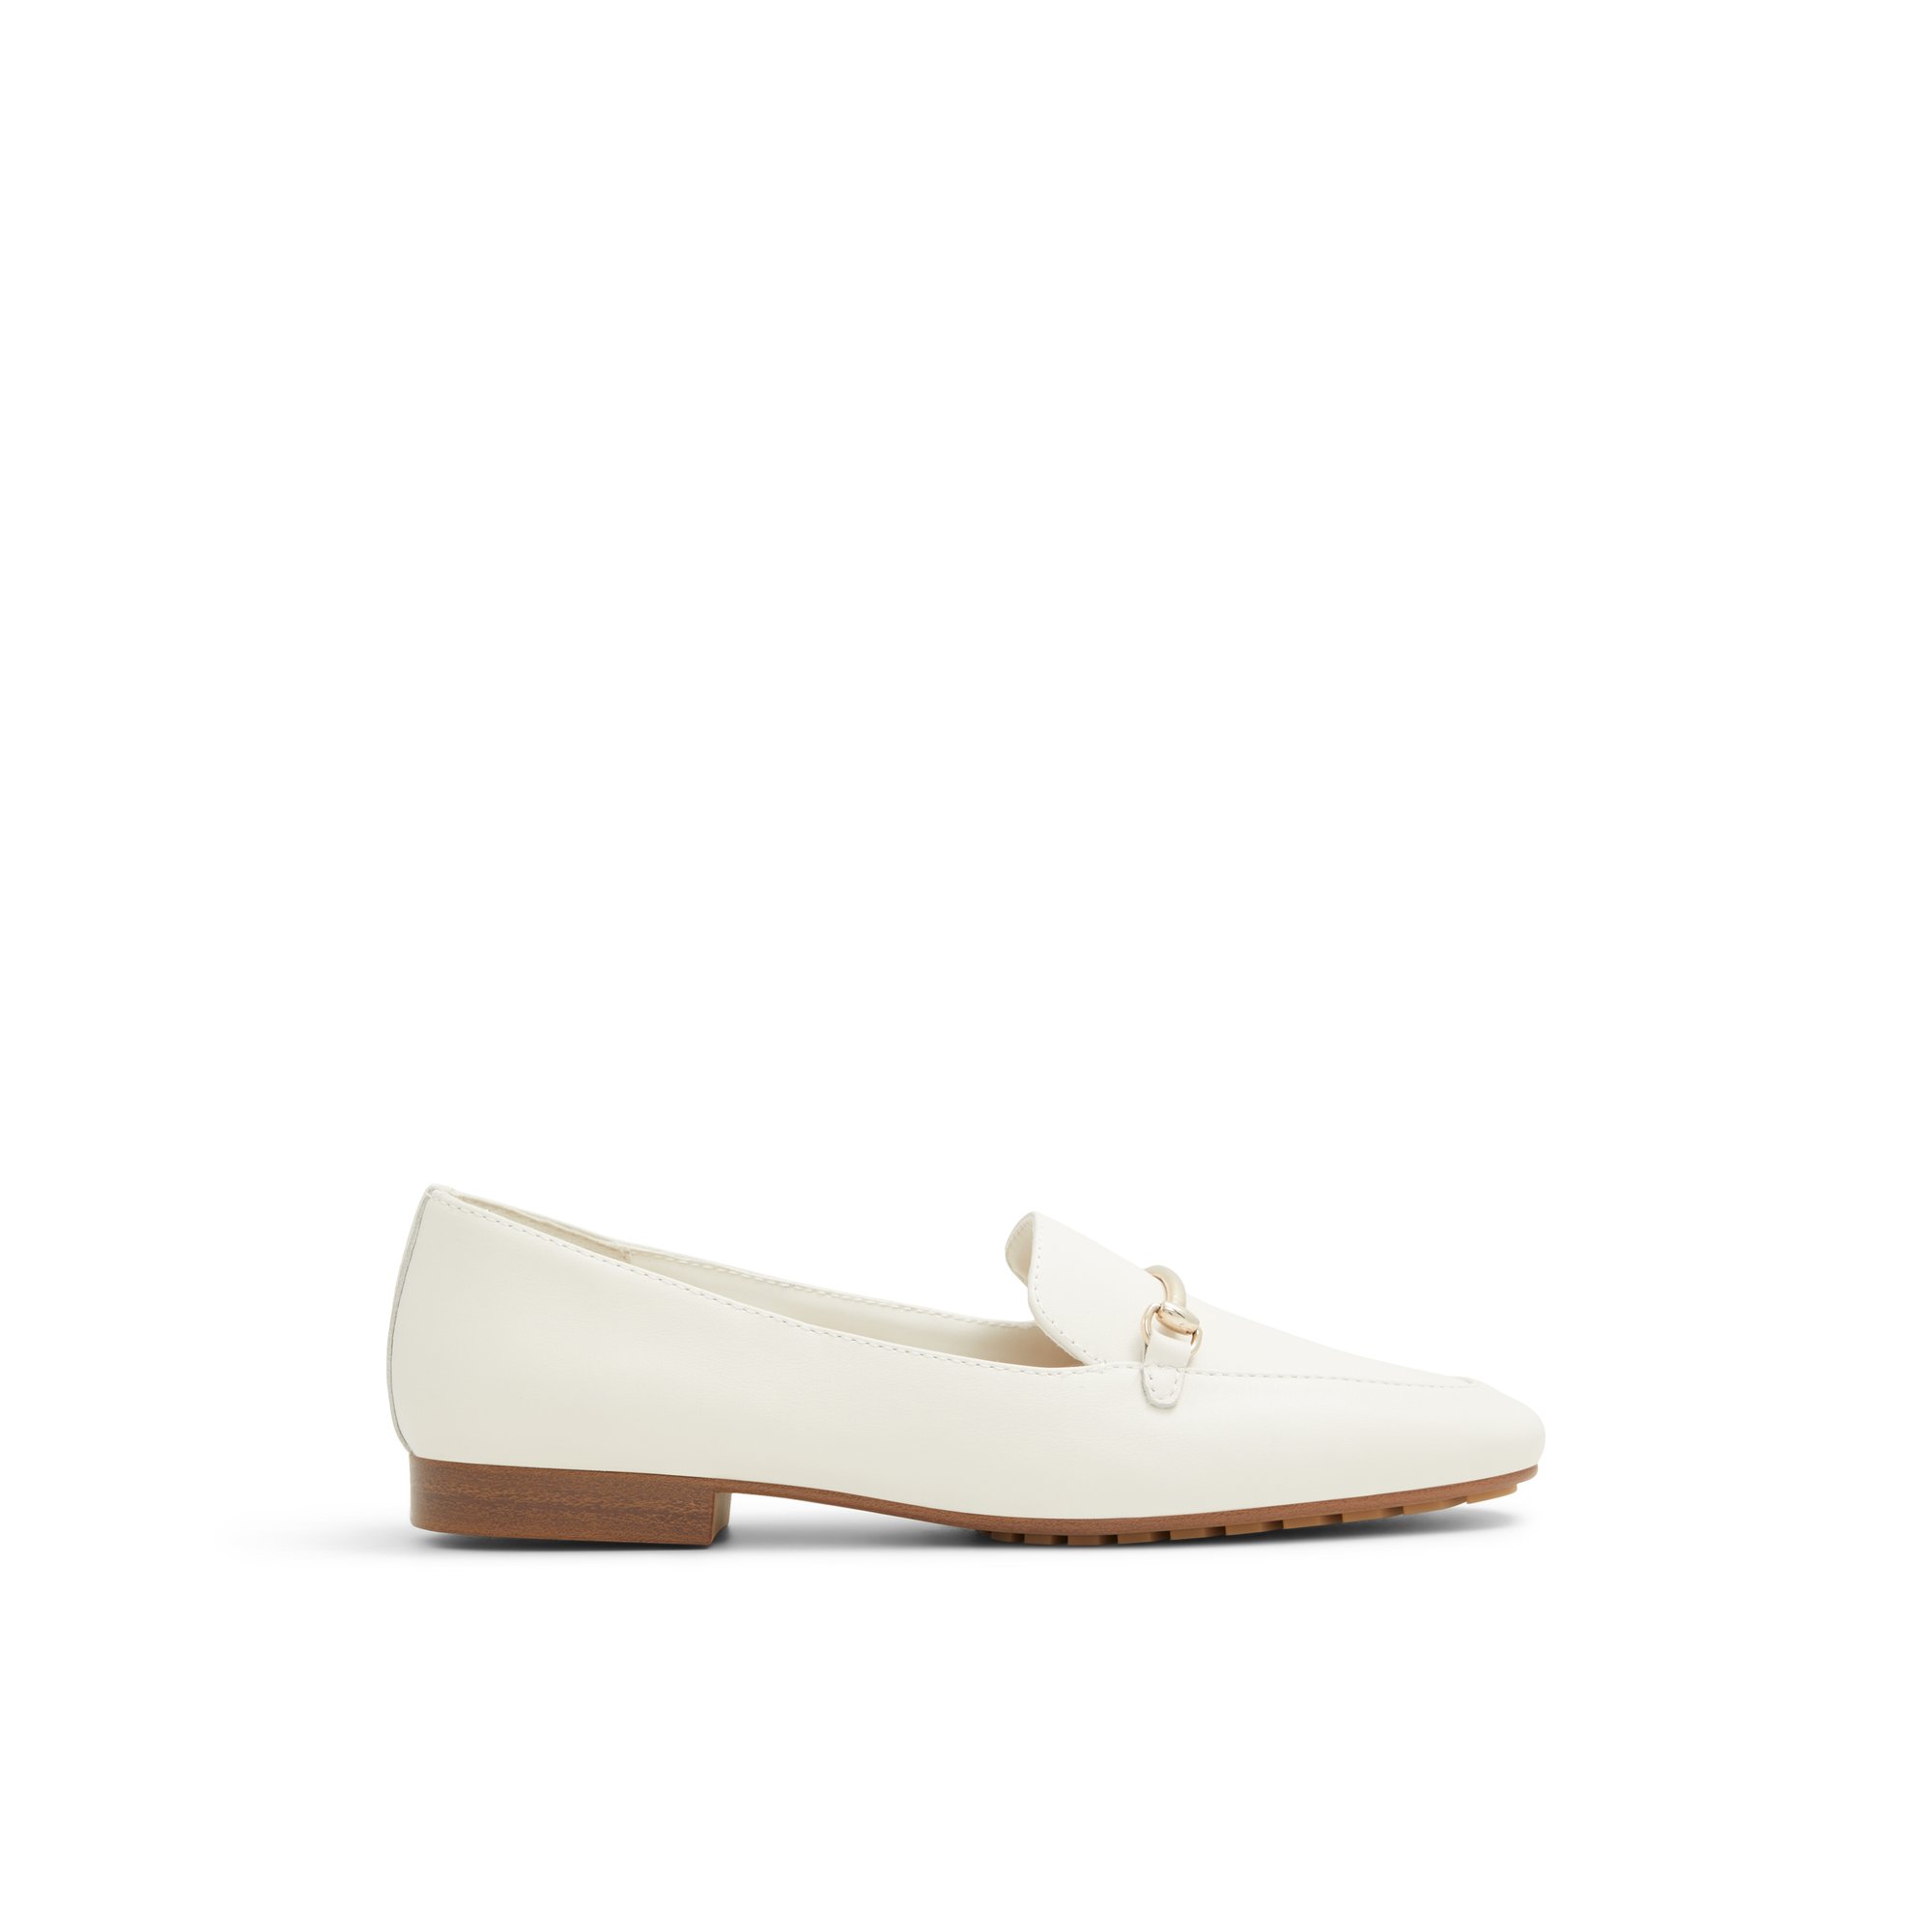 ALDO Harriot - Women's Loafer - White